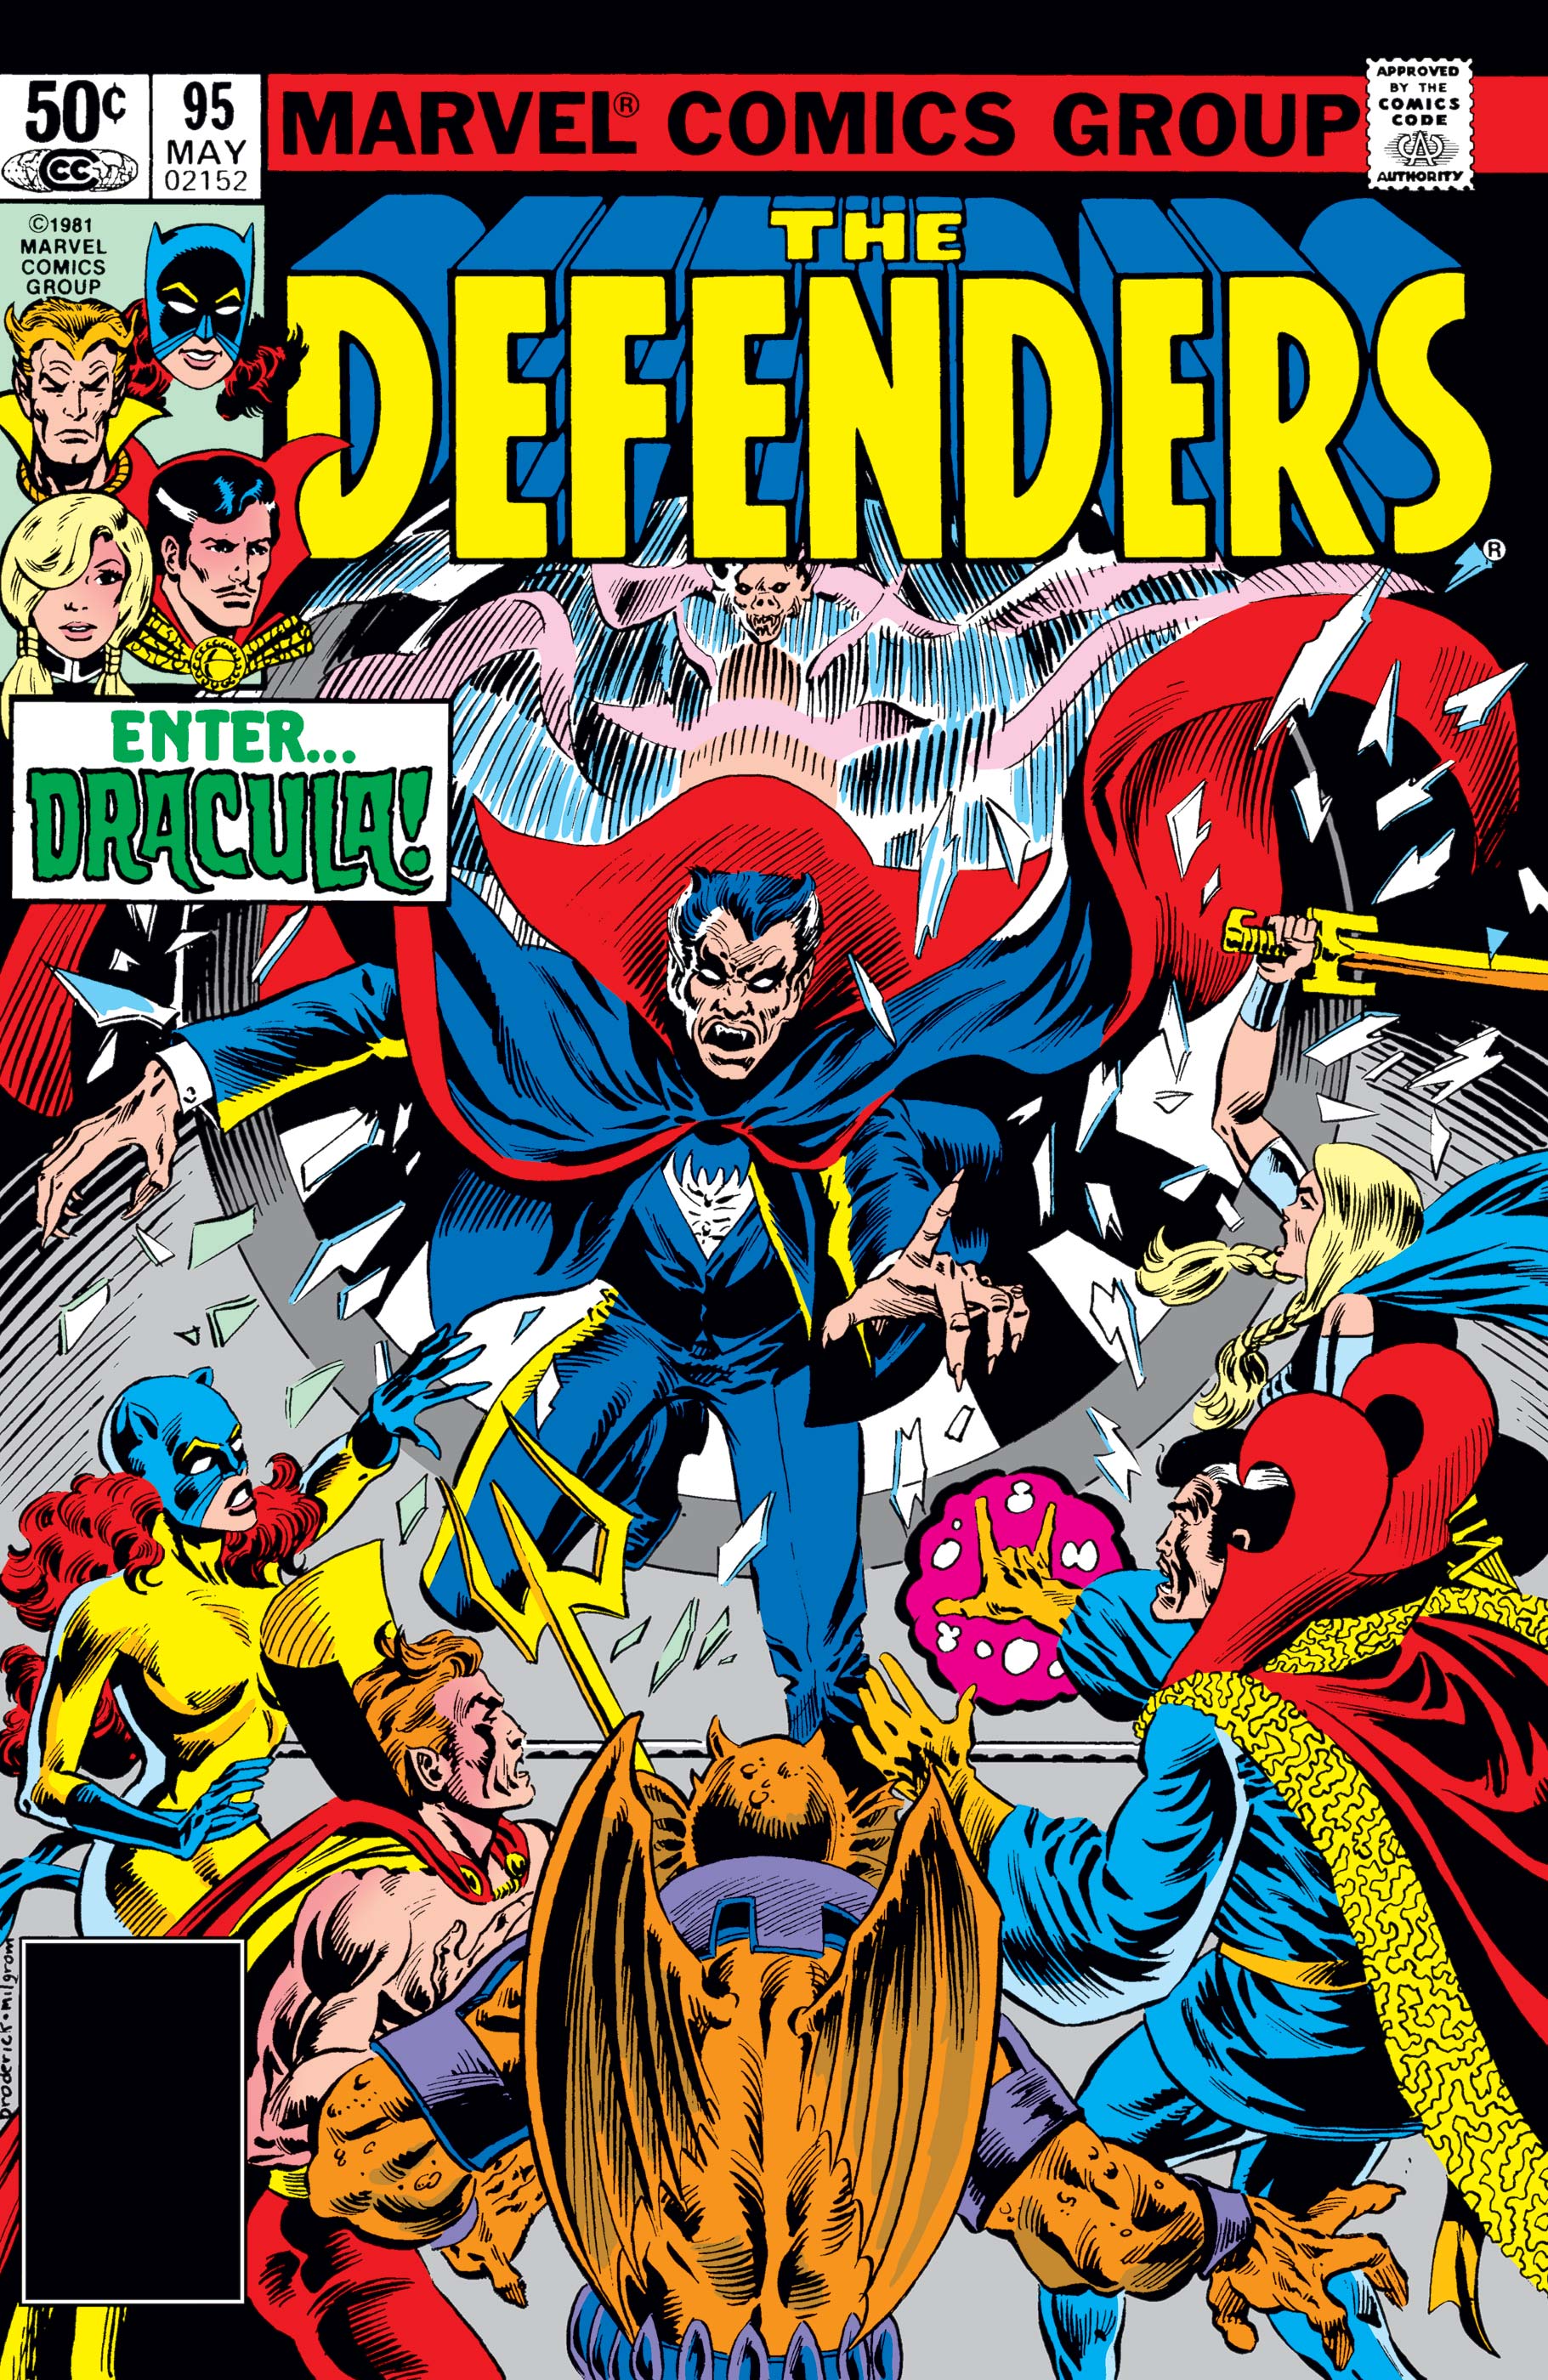 Defenders (1972) #95